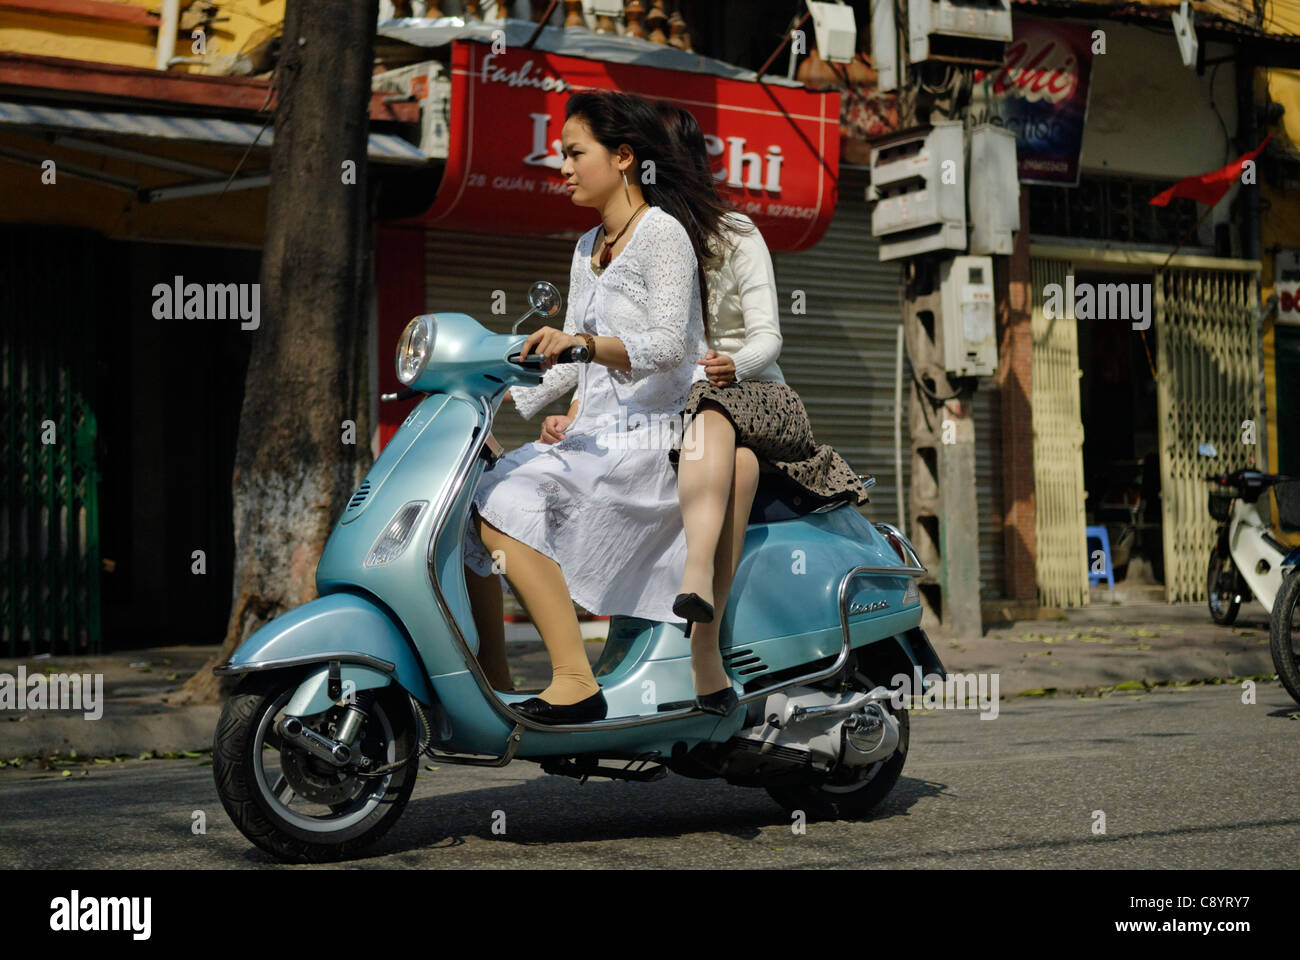 Asia, Vietnam, Hanoi. Hanoi old quarter. Two young dressy vietnamese women riding a Vespa motorbike through Hanoi.... Stock Photo